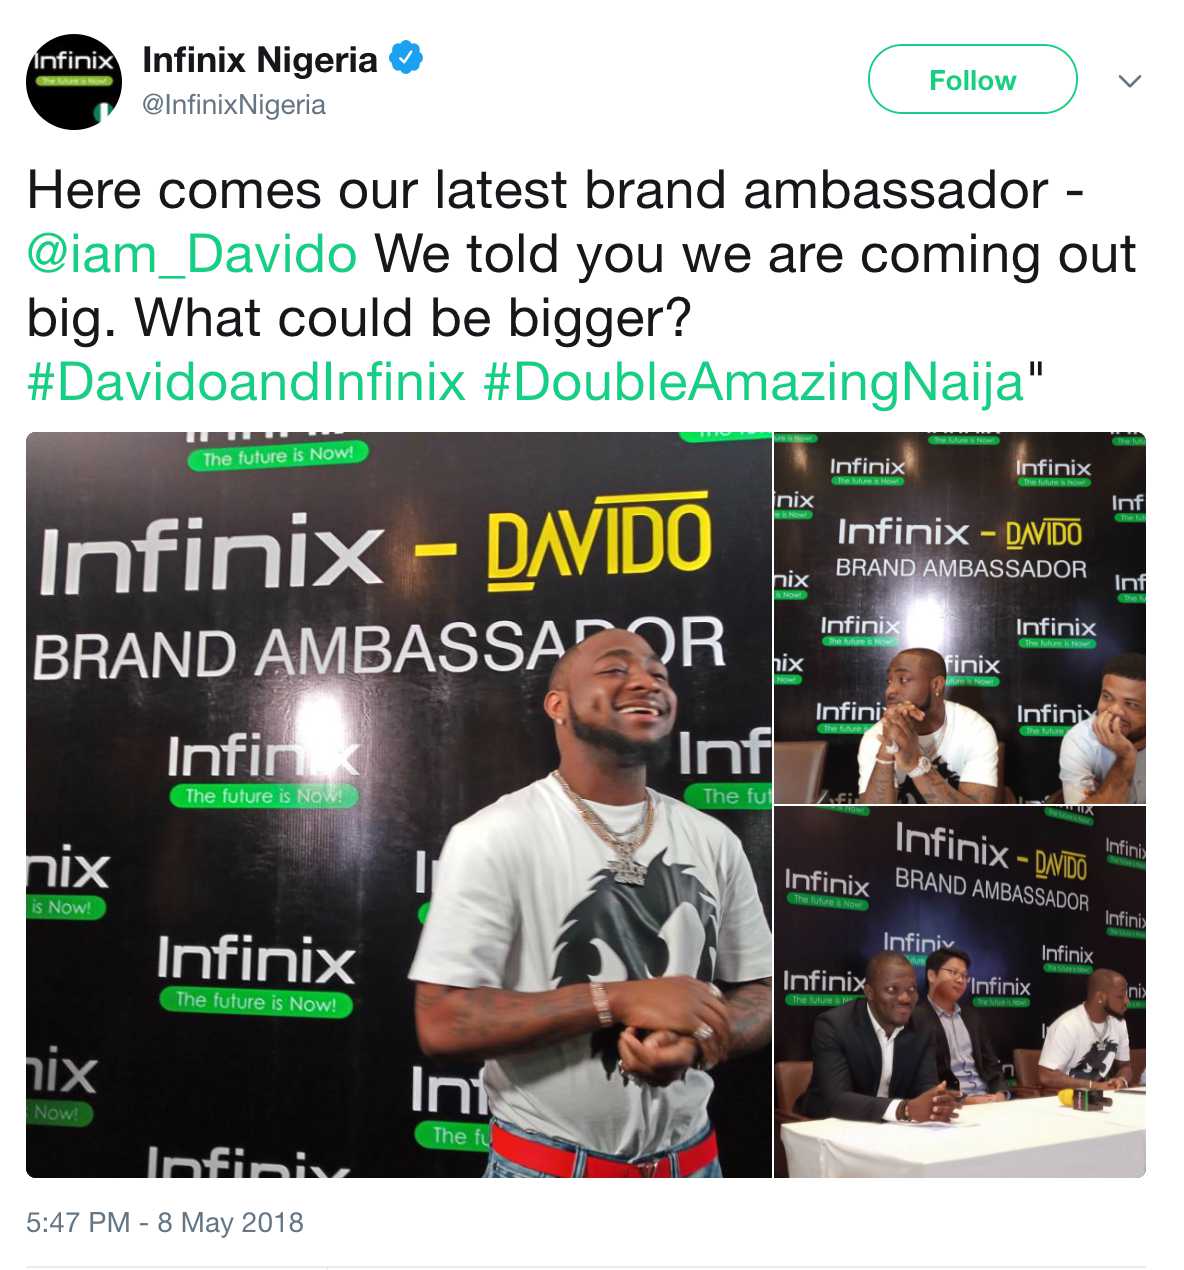 Davido Becomes Brand Ambassador For Infinix Smartphone